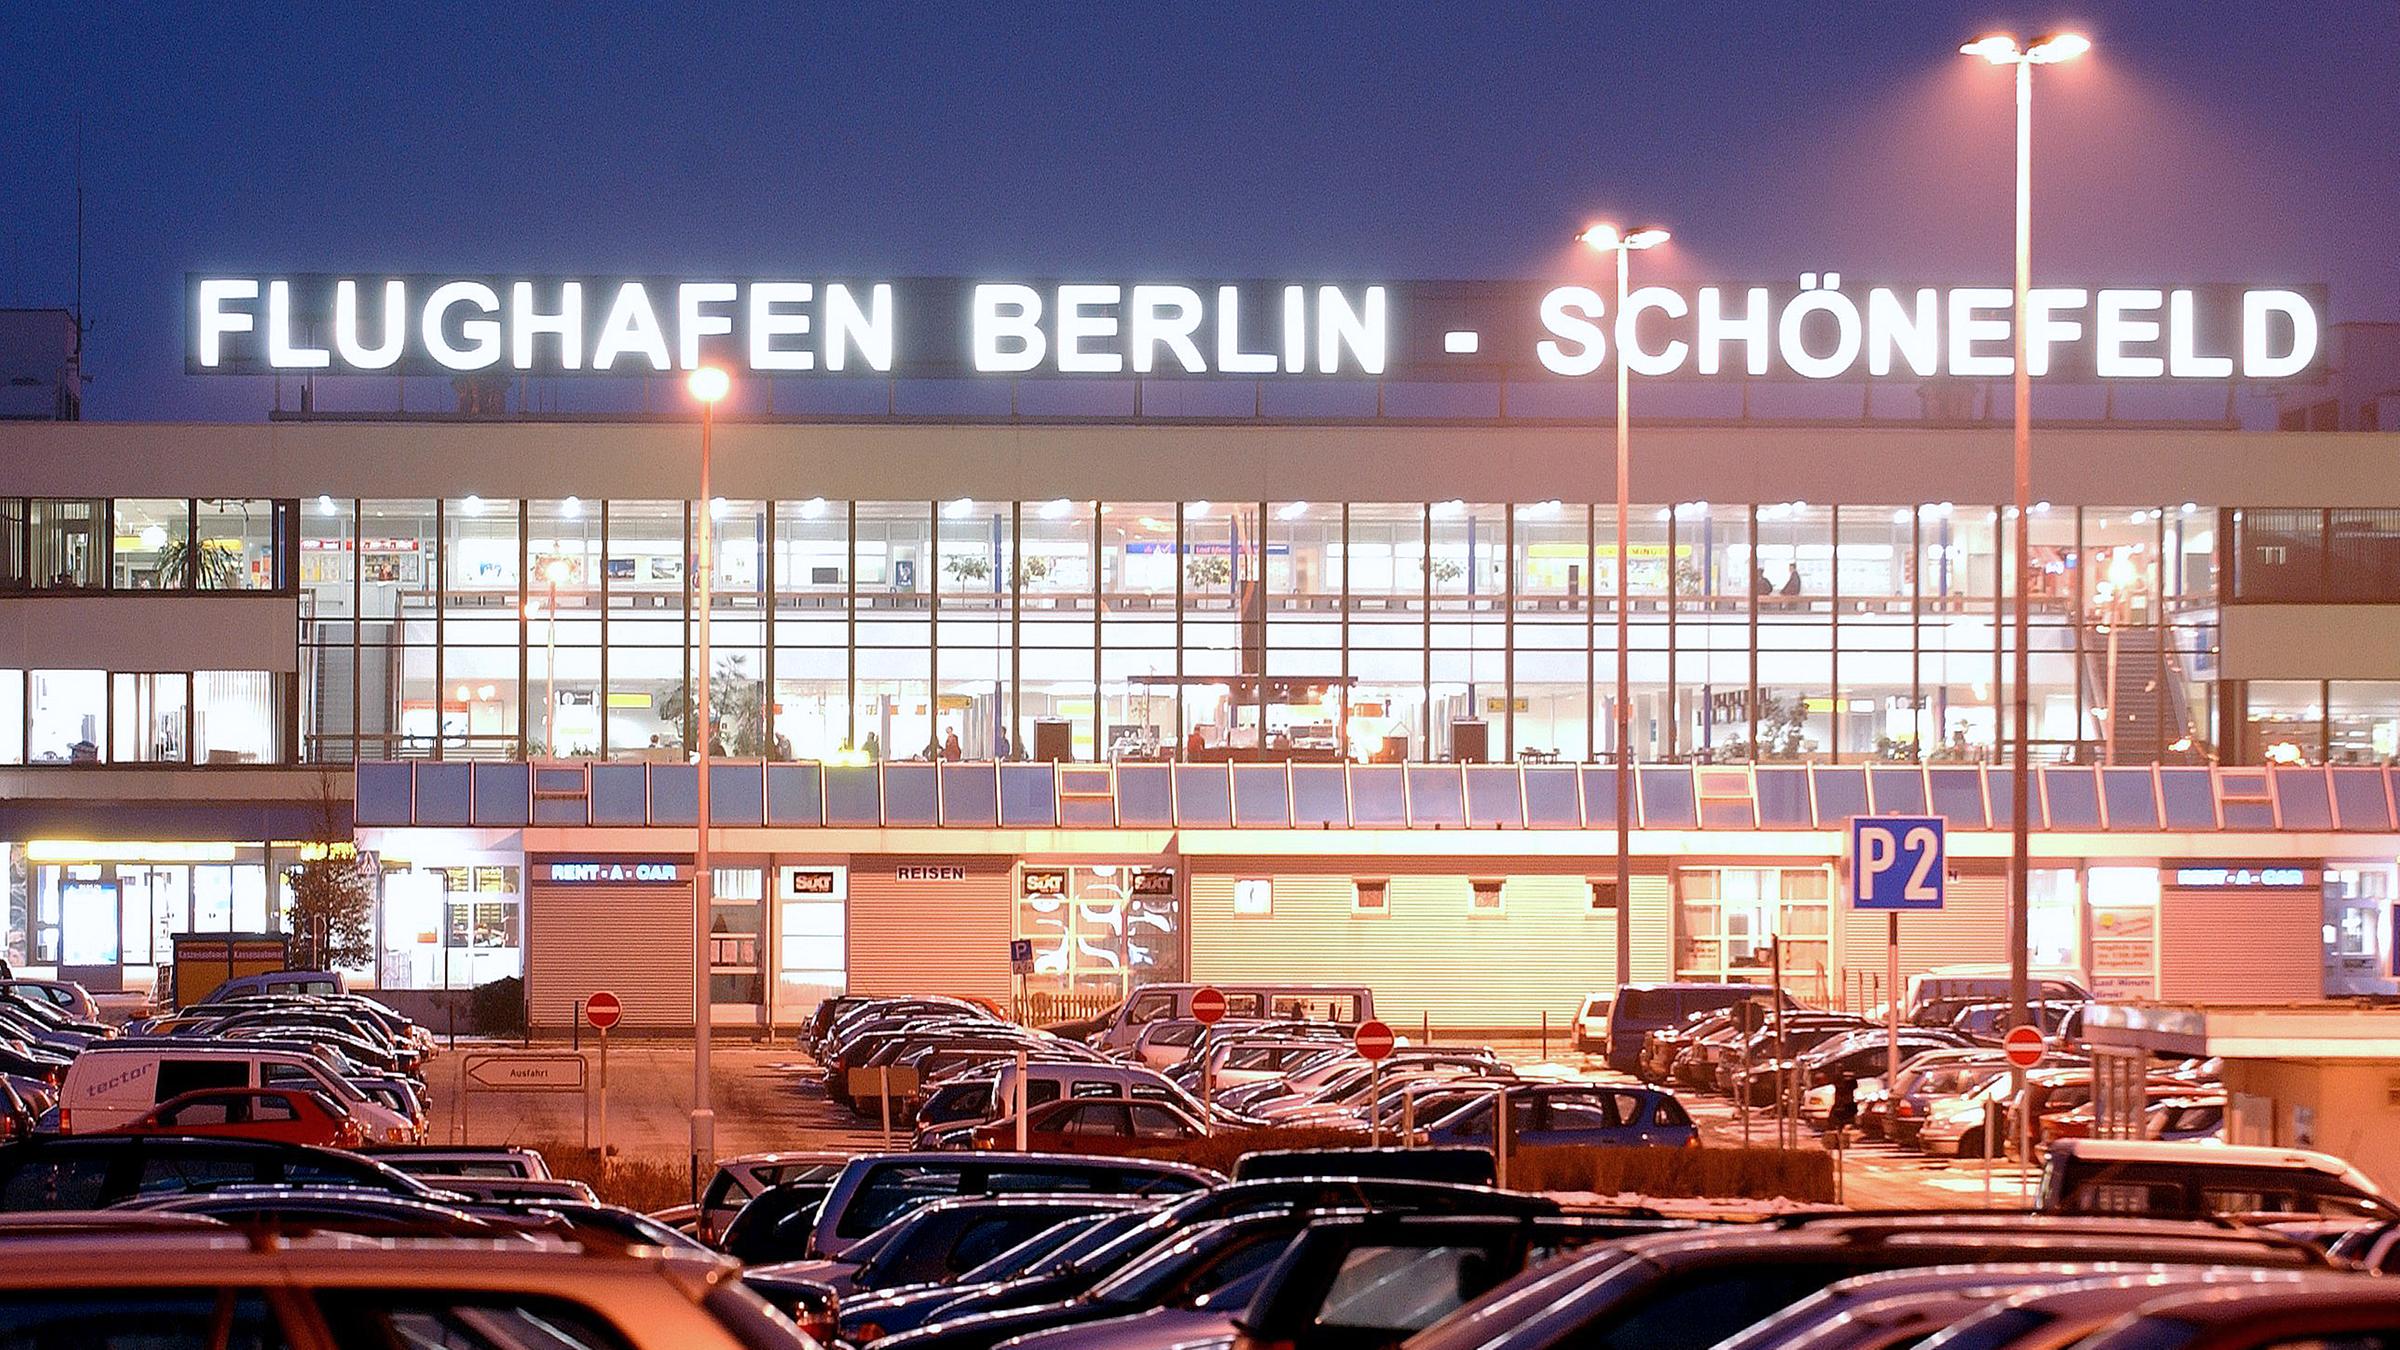 Archiv: Blick auf das abendlich angestrahlte Empfangsgebäude des Flughafens Schönefeld bei Berlin, aufgenommen am 20.02.2003